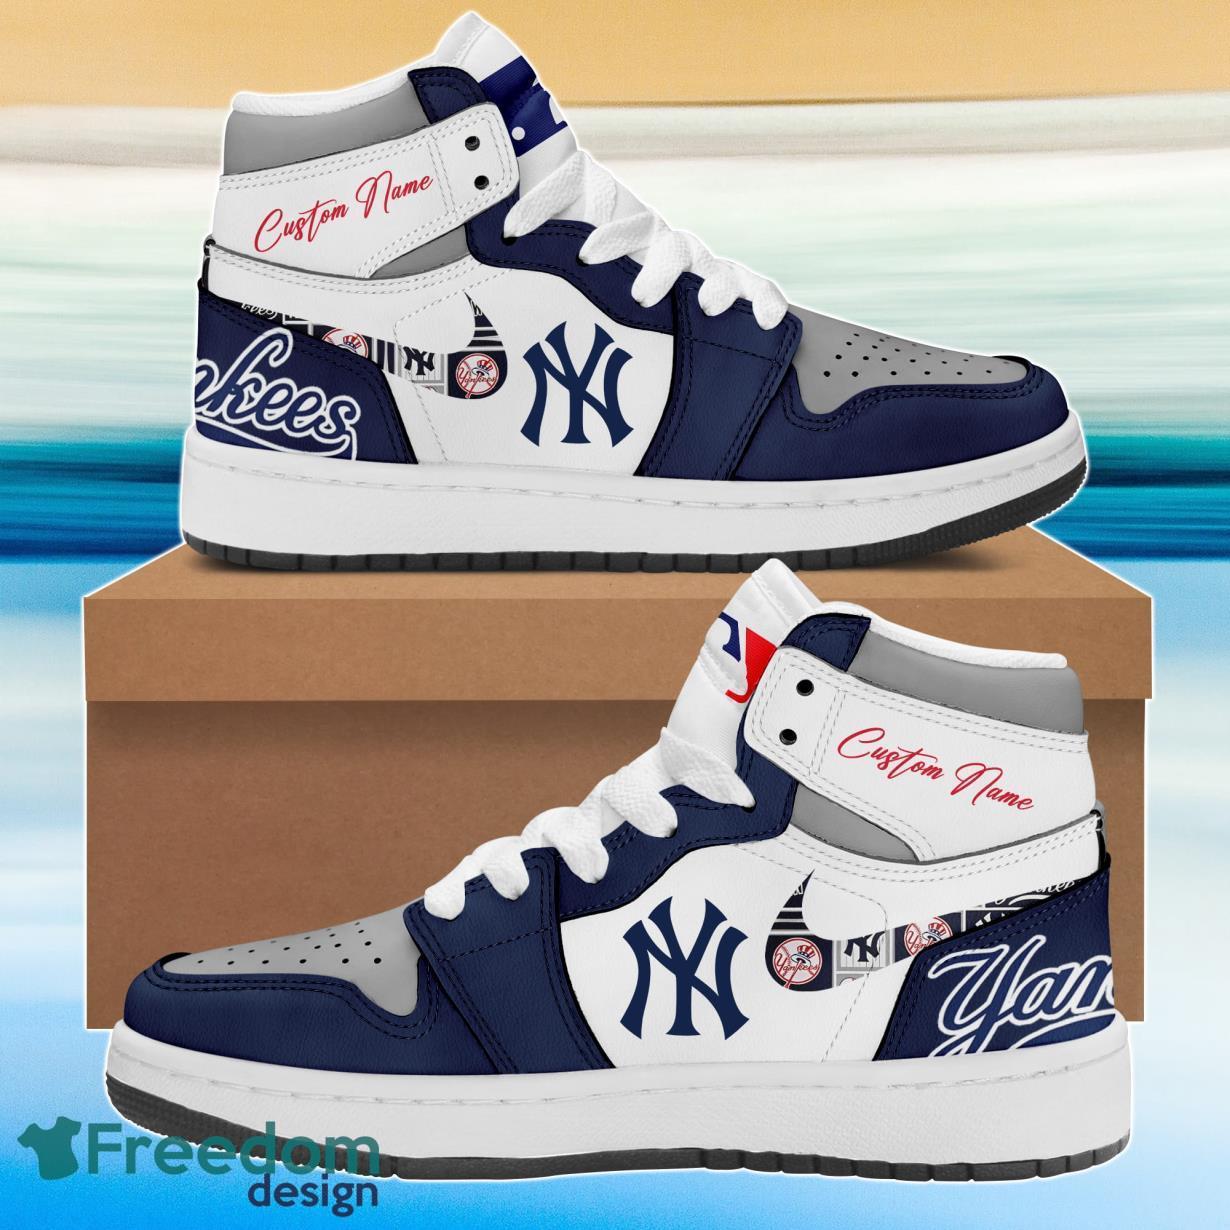 New York Yankees Air Jordan 4 Sneakers For Men And Women New